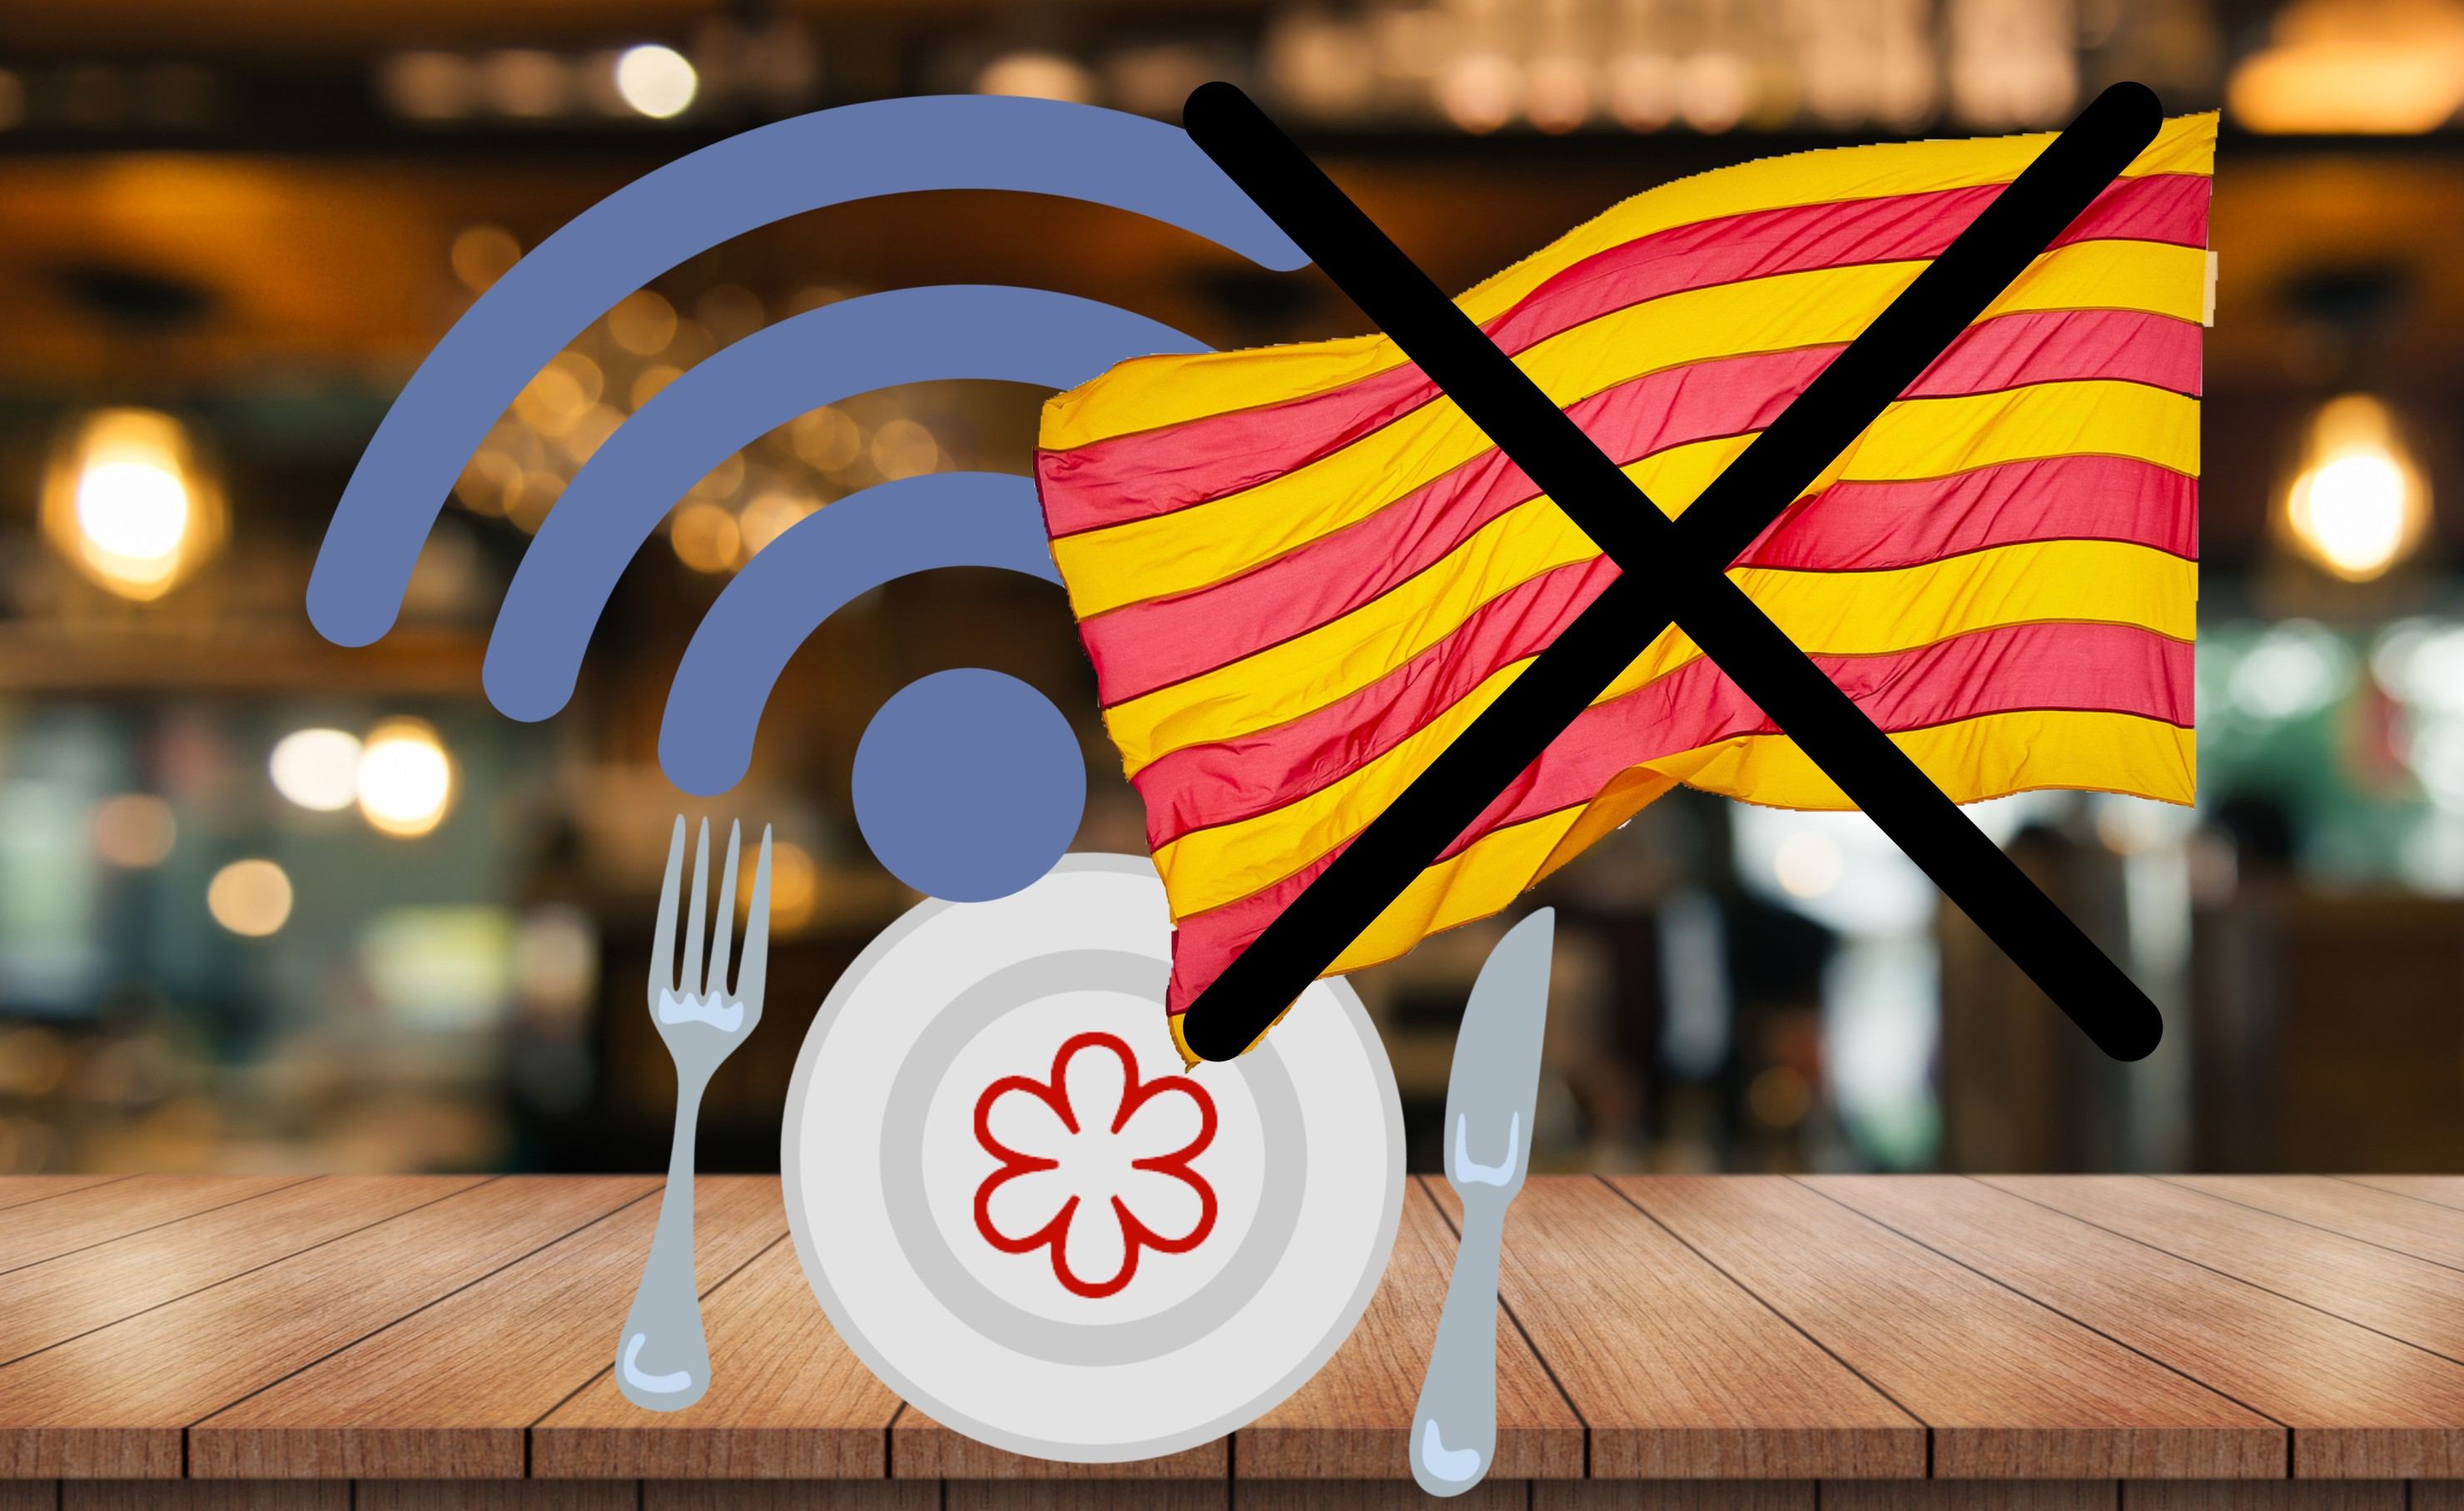 5 restaurants Michelin de Catalunya marginen el català a les seves pàgines web